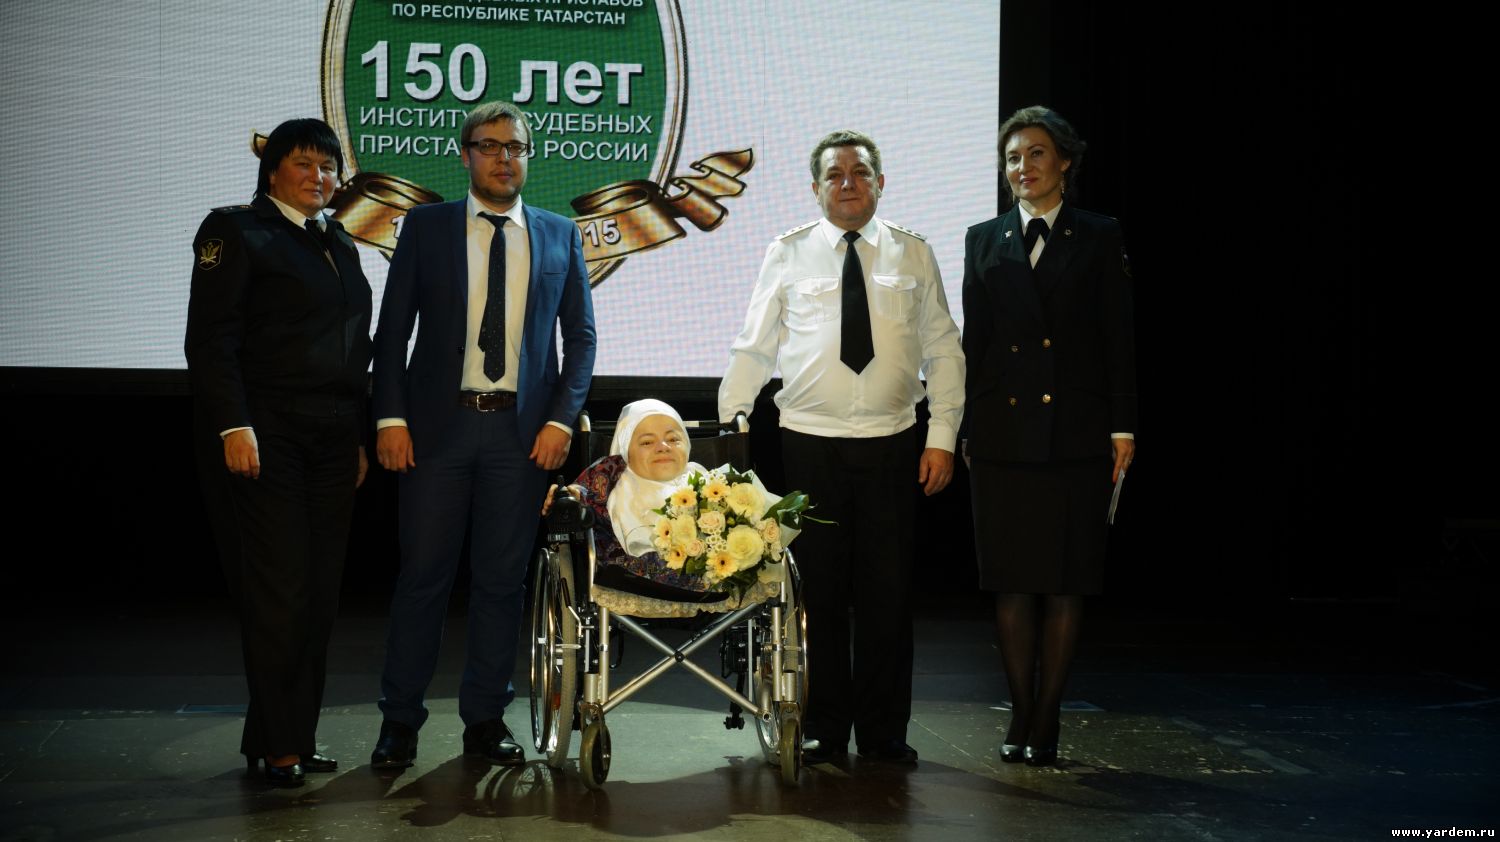 Мероприятие в честь 150 - летия образования института судебных приставов в России